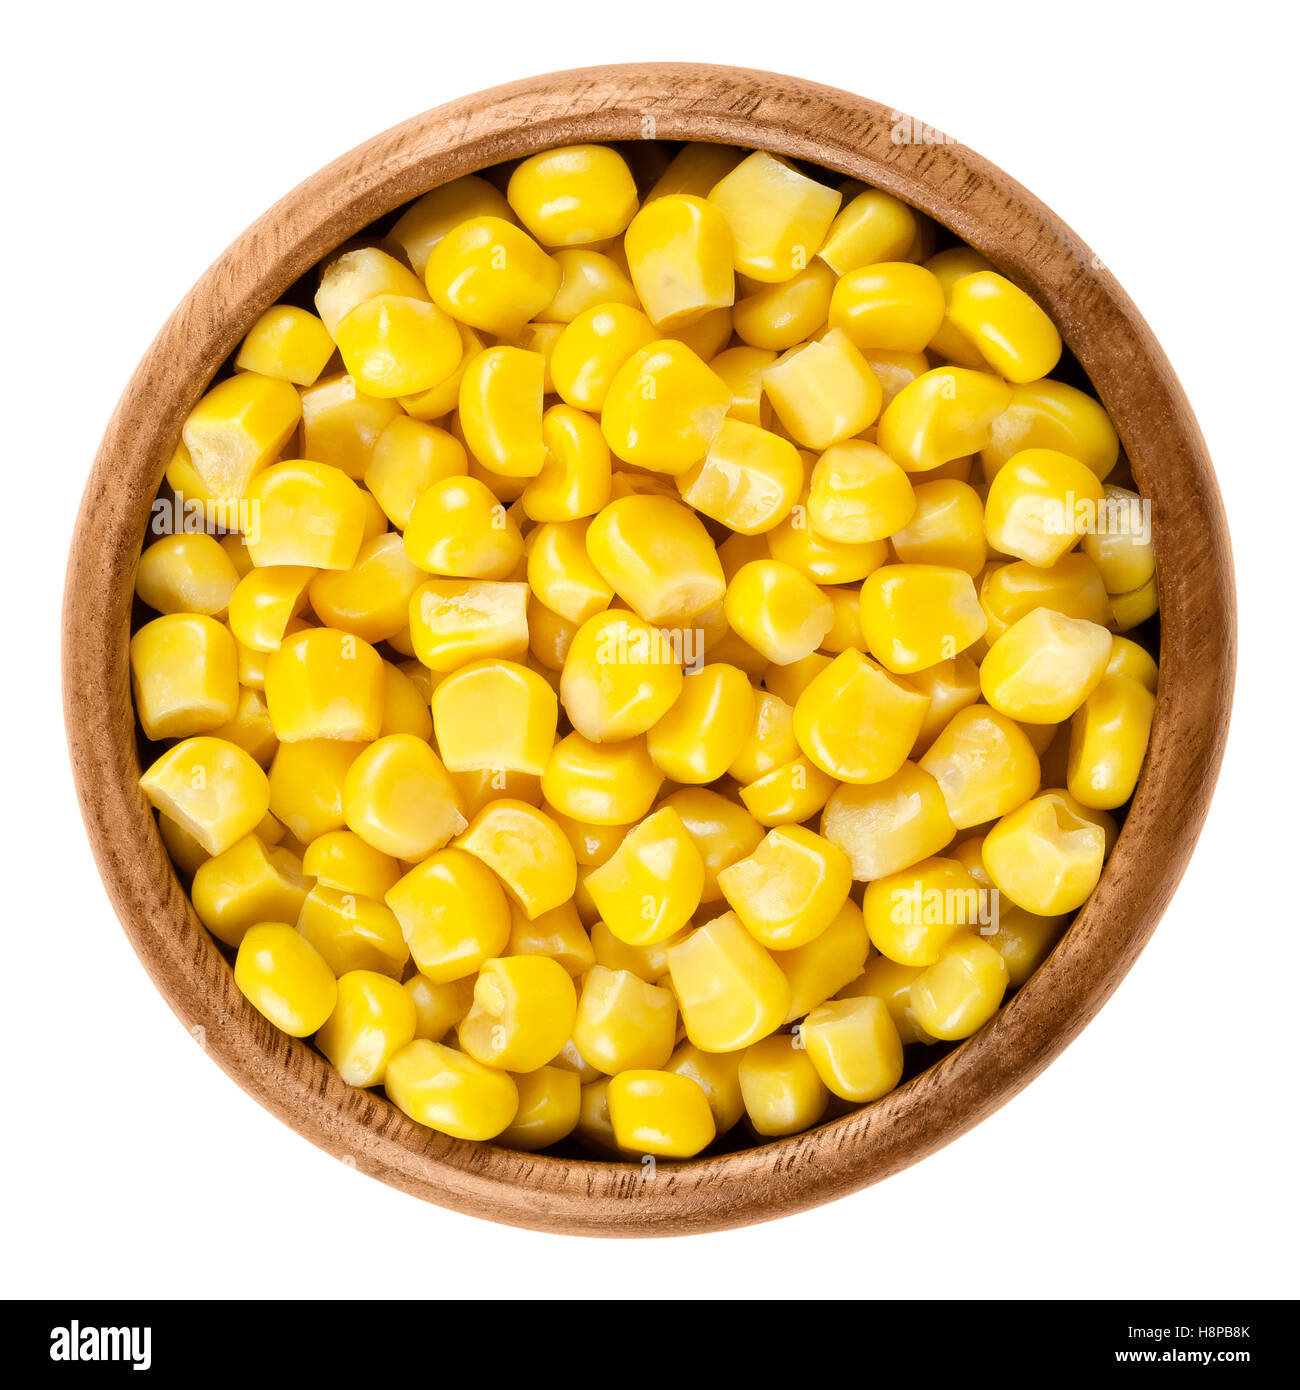 Les grains de maïs doux à bol en bois sur fond blanc. Les conserves de légumes cuits jaune maïs, Zea mays, aussi appelé sucre ou pole du maïs. Banque D'Images